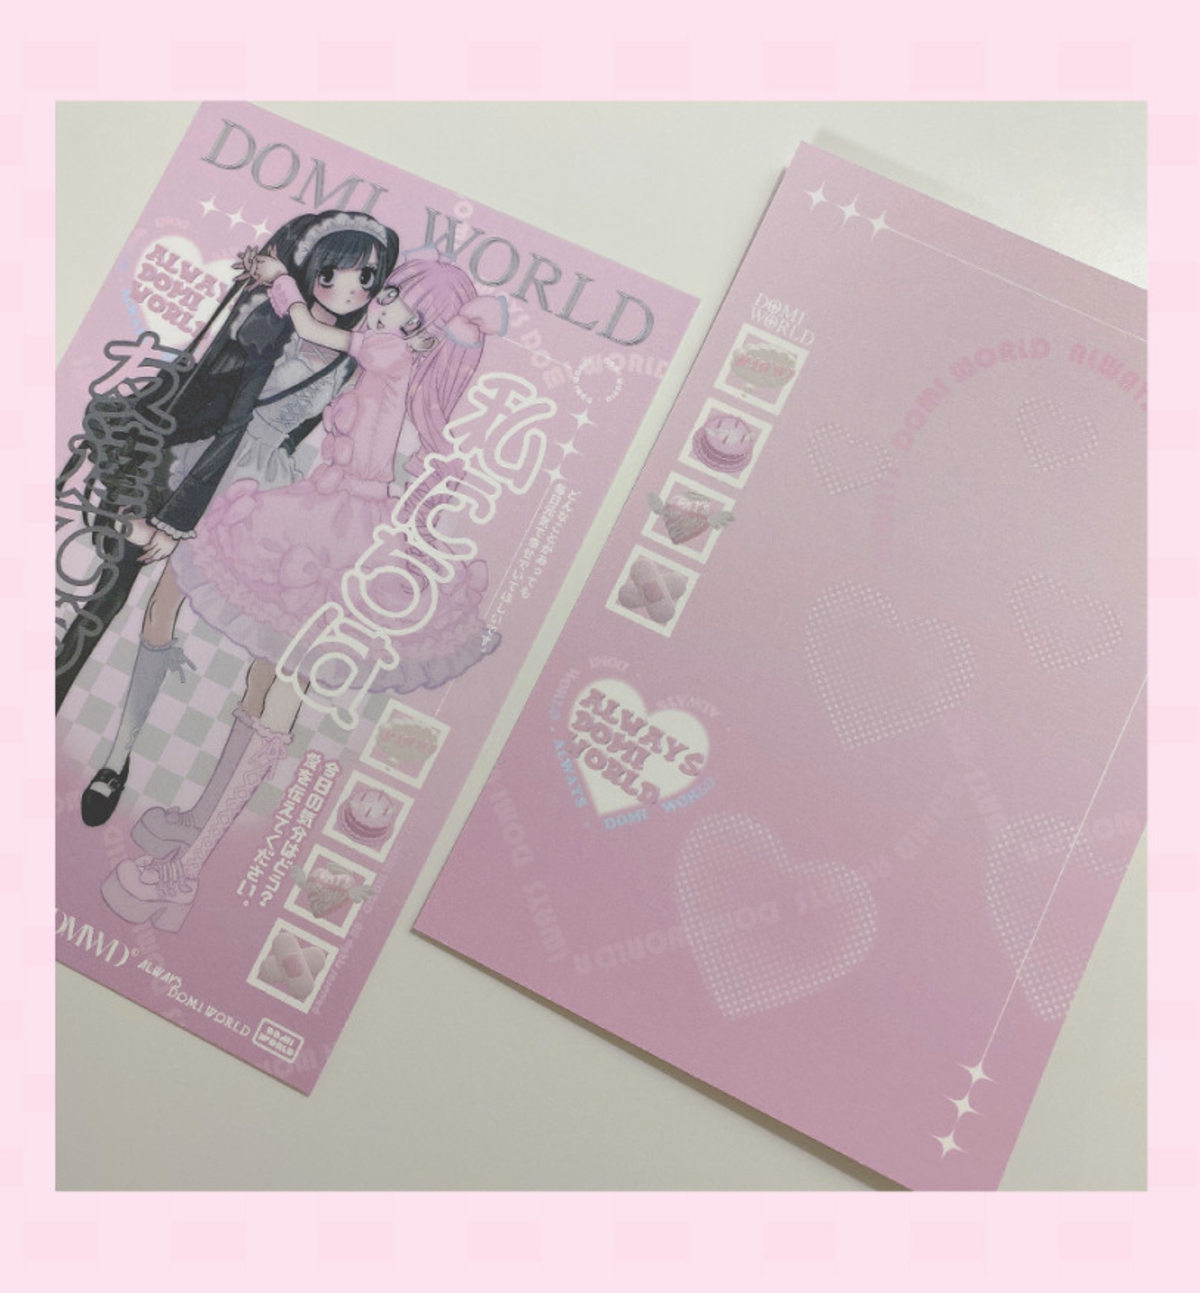 Domi World Watashi Tachiwa Postcard [Double Sided]